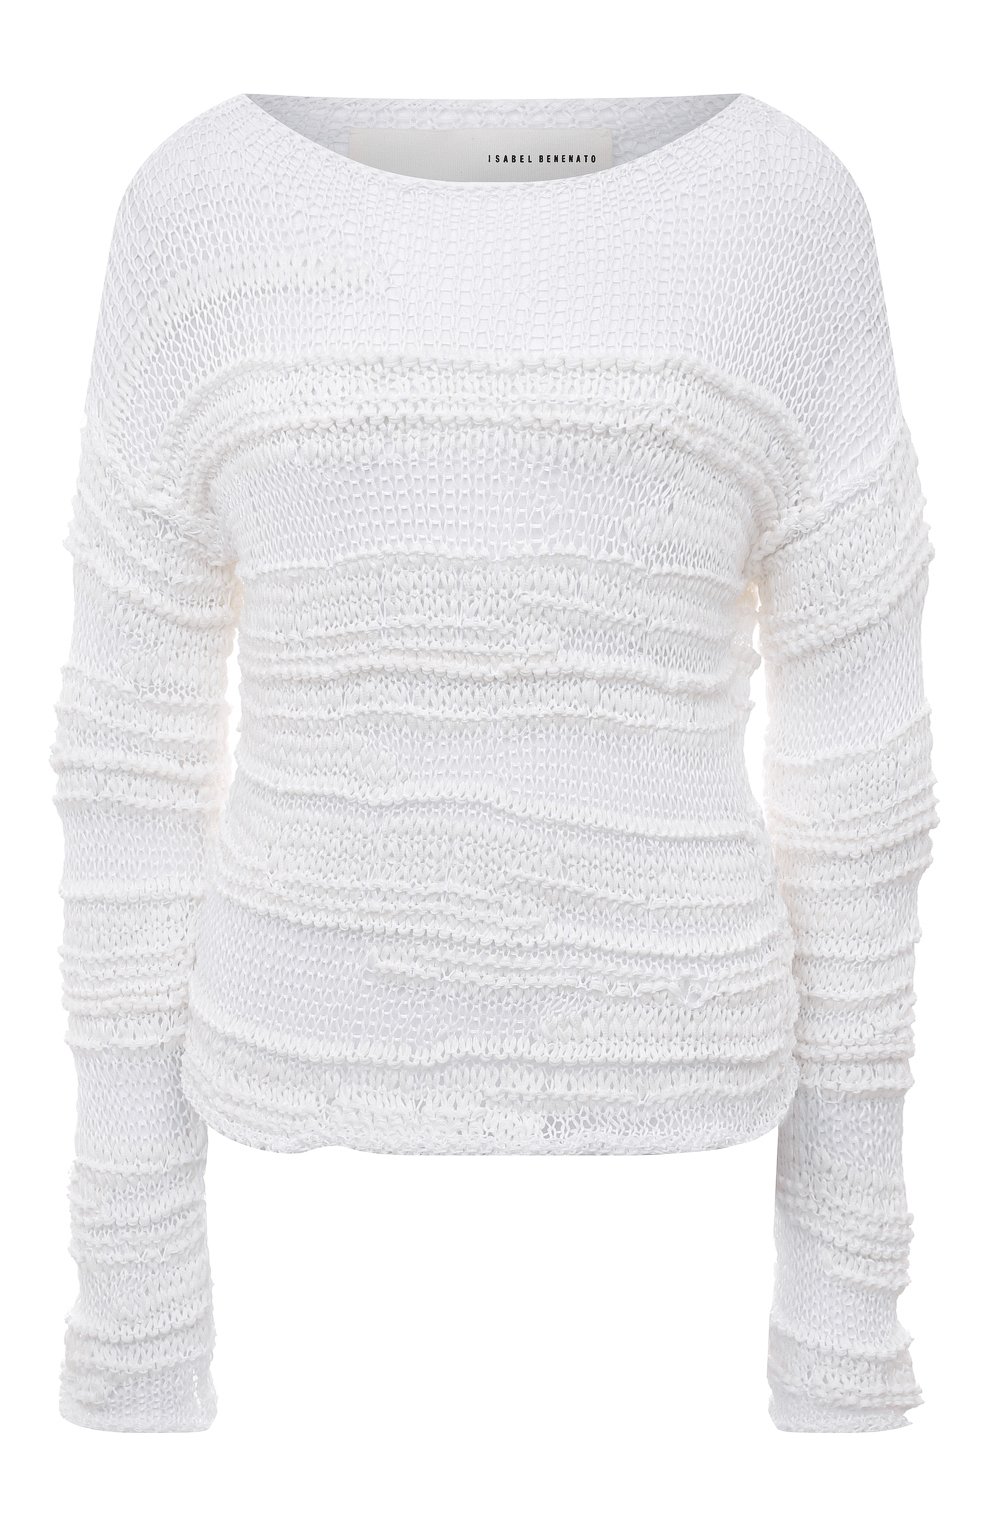 Трикотаж Isabel Benenato, Хлопковый пуловер Isabel Benenato, Италия, Белый, Хлопок: 91%; Полиамид: 9%;, 3475982  - купить